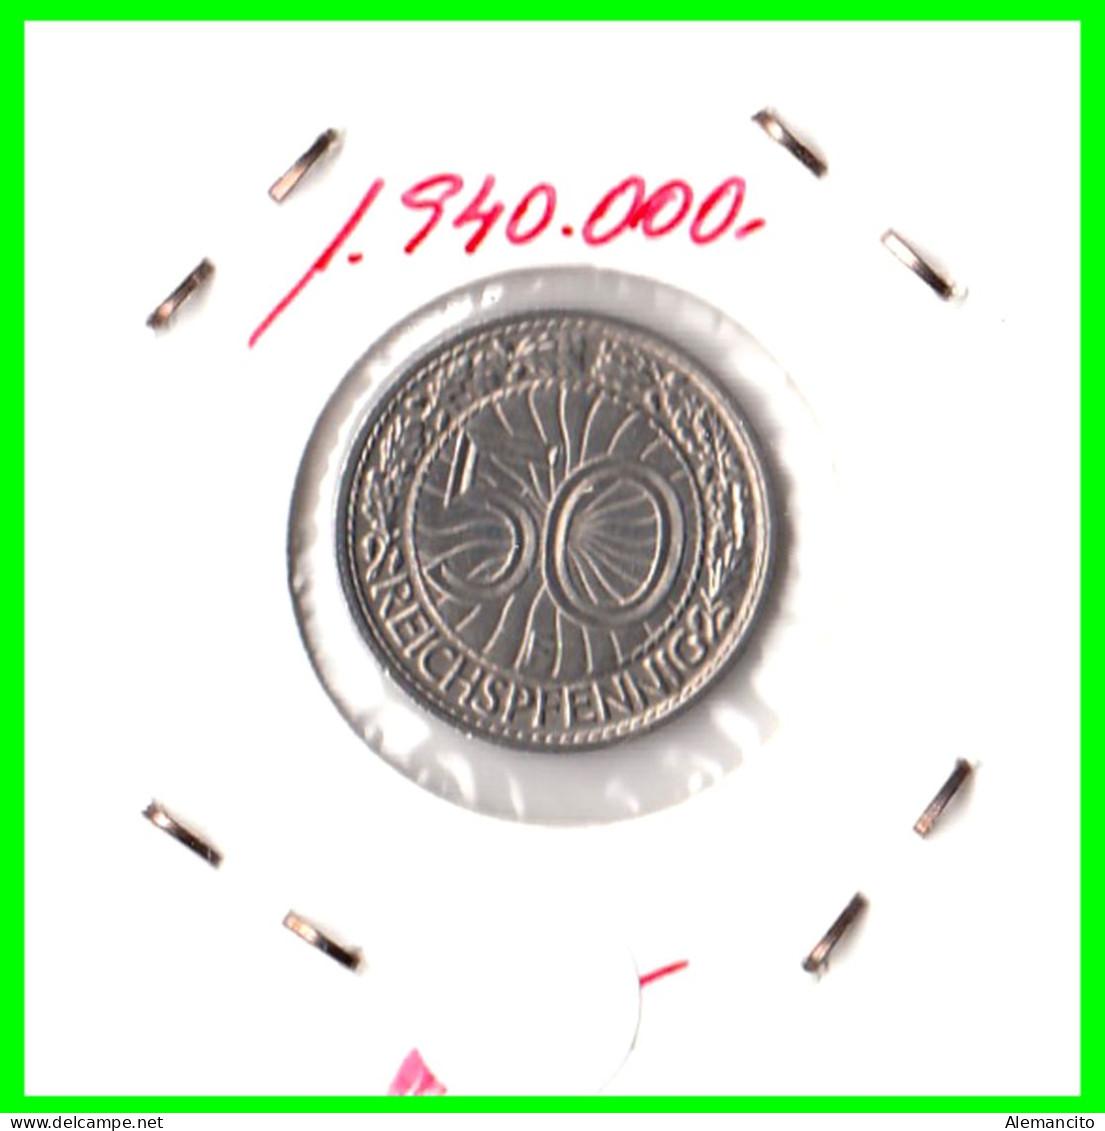 GERMANY REPÚBLICA DE WEIMAR 50 REICHSPFENNIG ( 1927 CECA - F )  (REICHSPFENNIG KM # 40 - 50 Rentenpfennig & 50 Reichspfennig